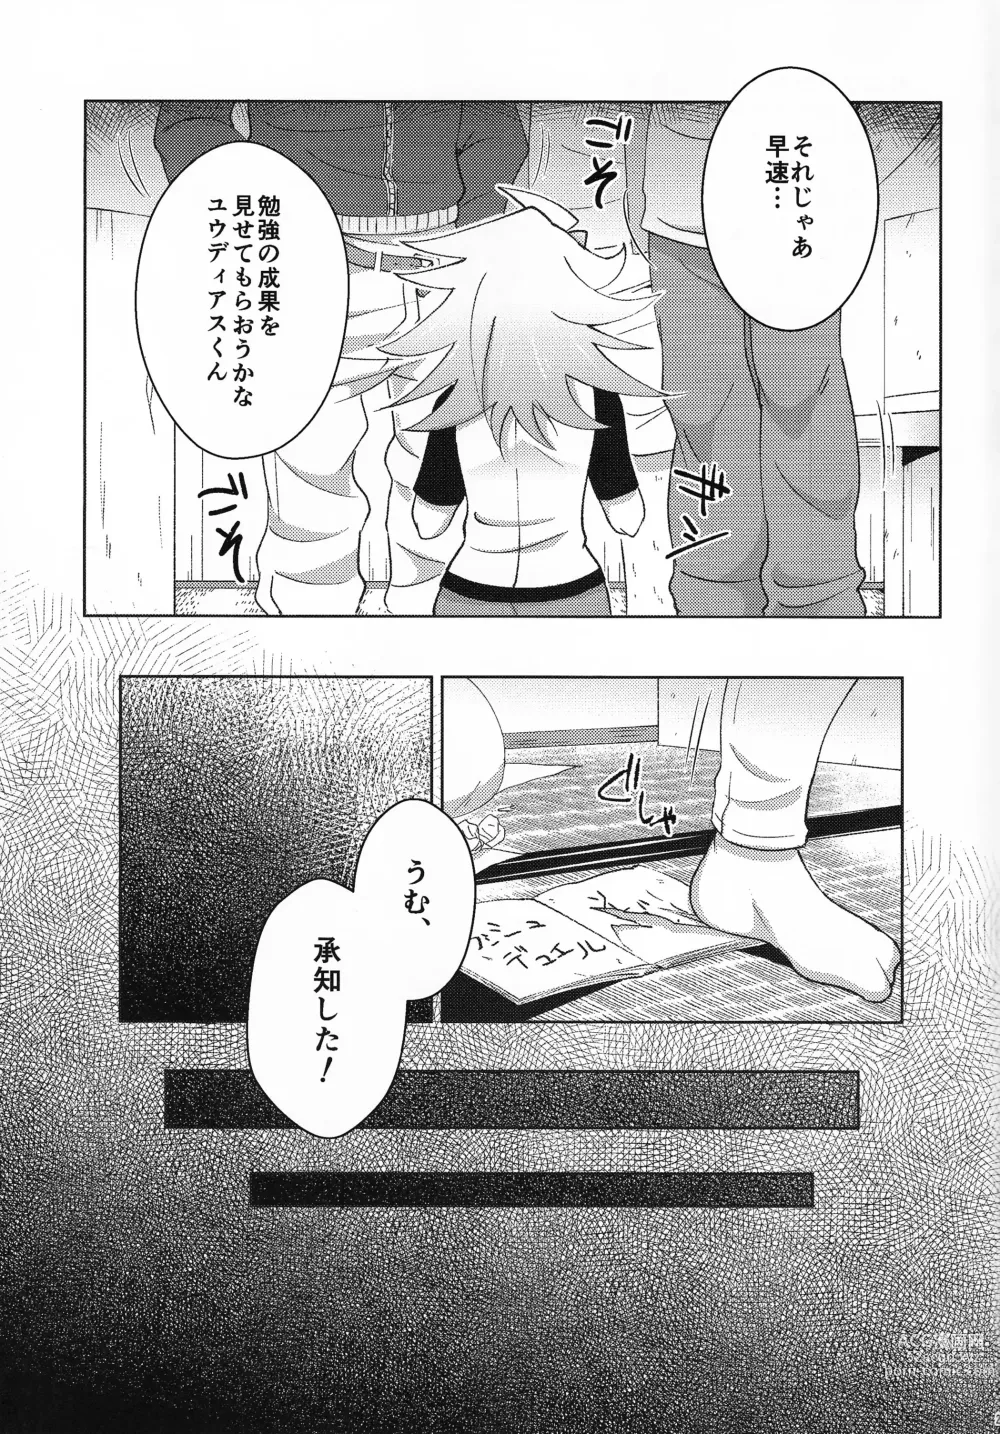 Page 22 of doujinshi Kibako no Naka no Cartumata